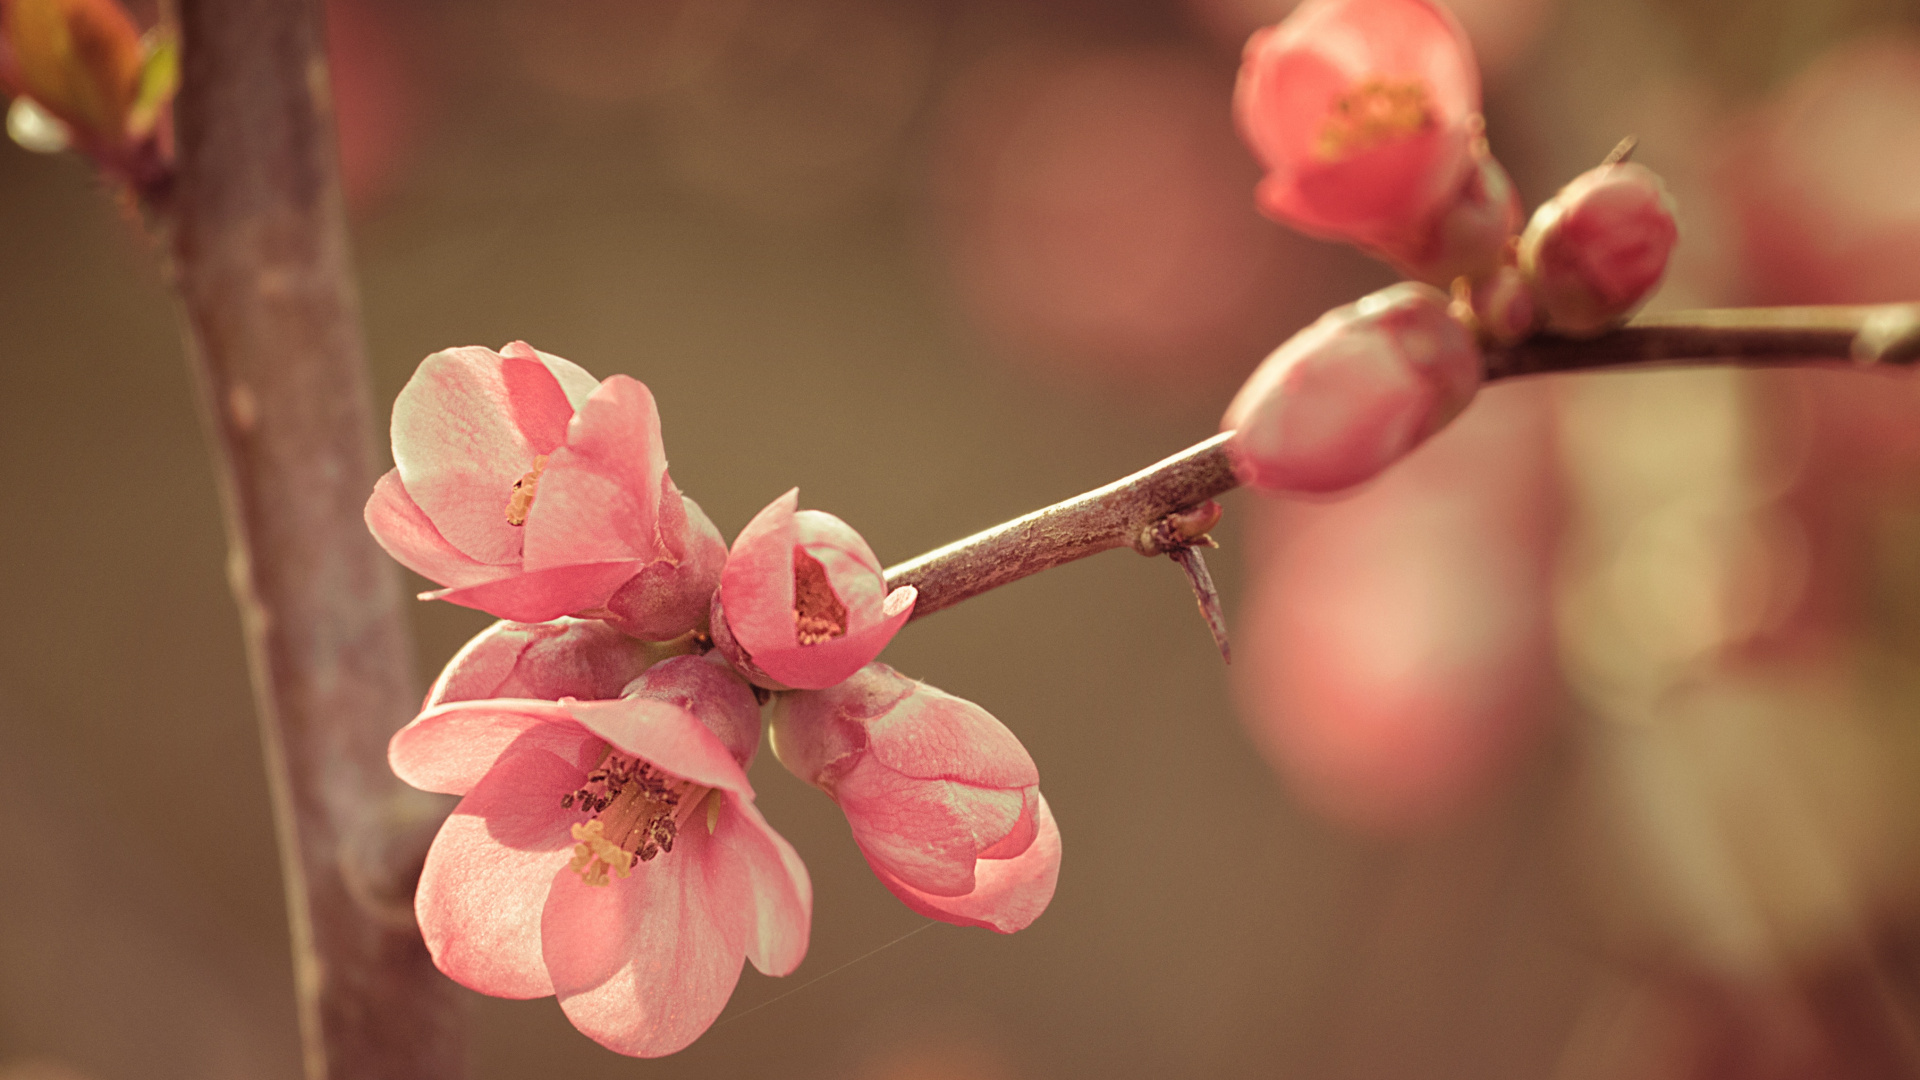 樱花, 粉红色, 弹簧, 开花, 树枝 壁纸 1920x1080 允许